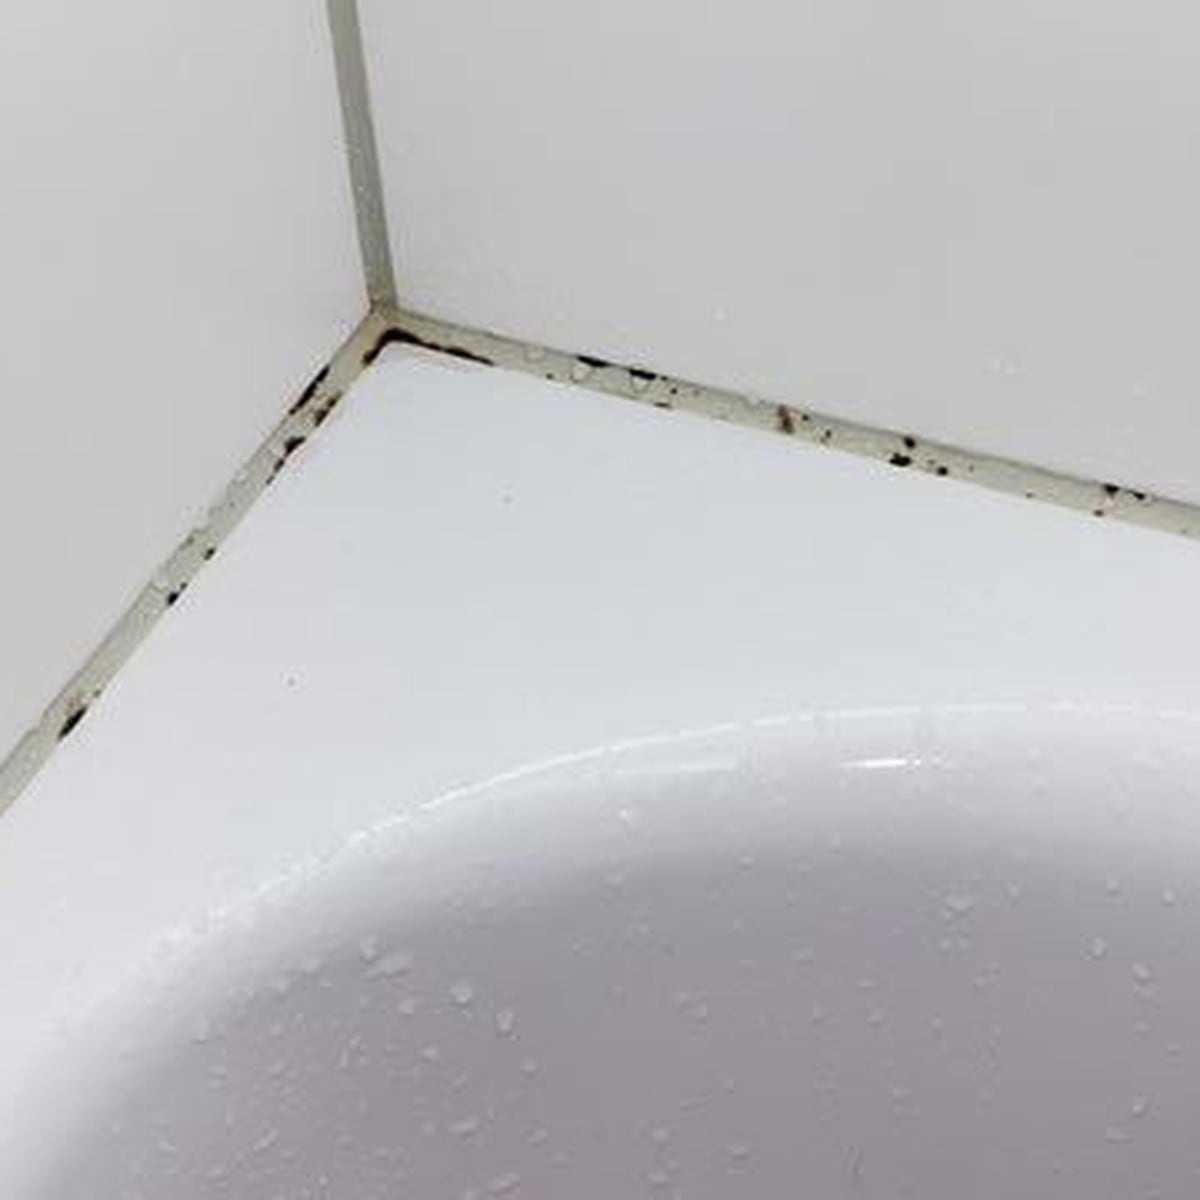 Trucos caseros para quitar el moho acumulado en el techo del baño